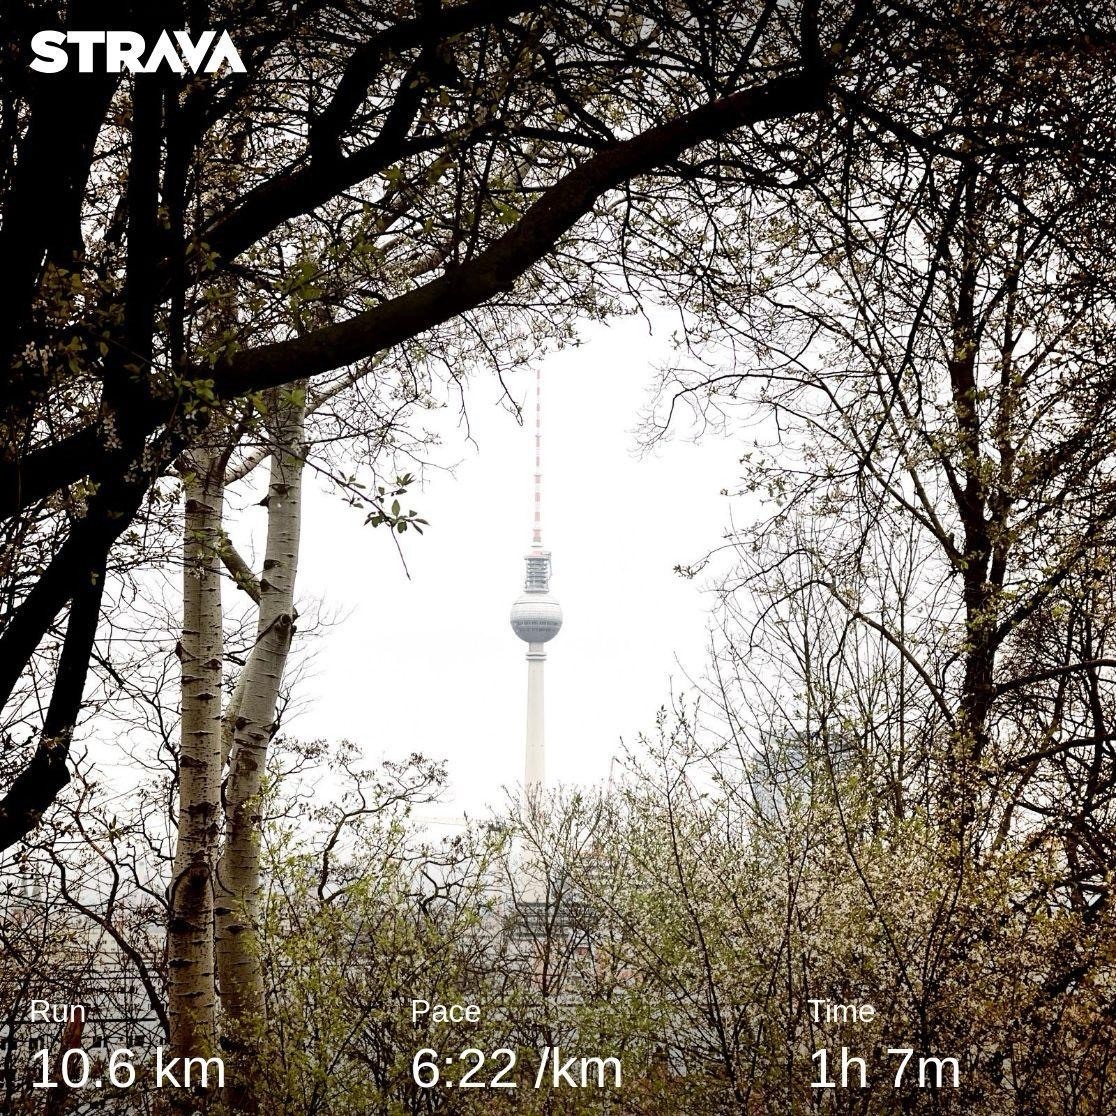 Ein Screenshot einer Strava-Aktivität zeigt eine Laufstrecke von 10,6 km, eine Pace von 6:22/km und eine Zeit von 1 Stunde 7 Minuten vor einem Hintergrundbild mit einem zwischen Bäumen sichtbaren Fernsehturm.